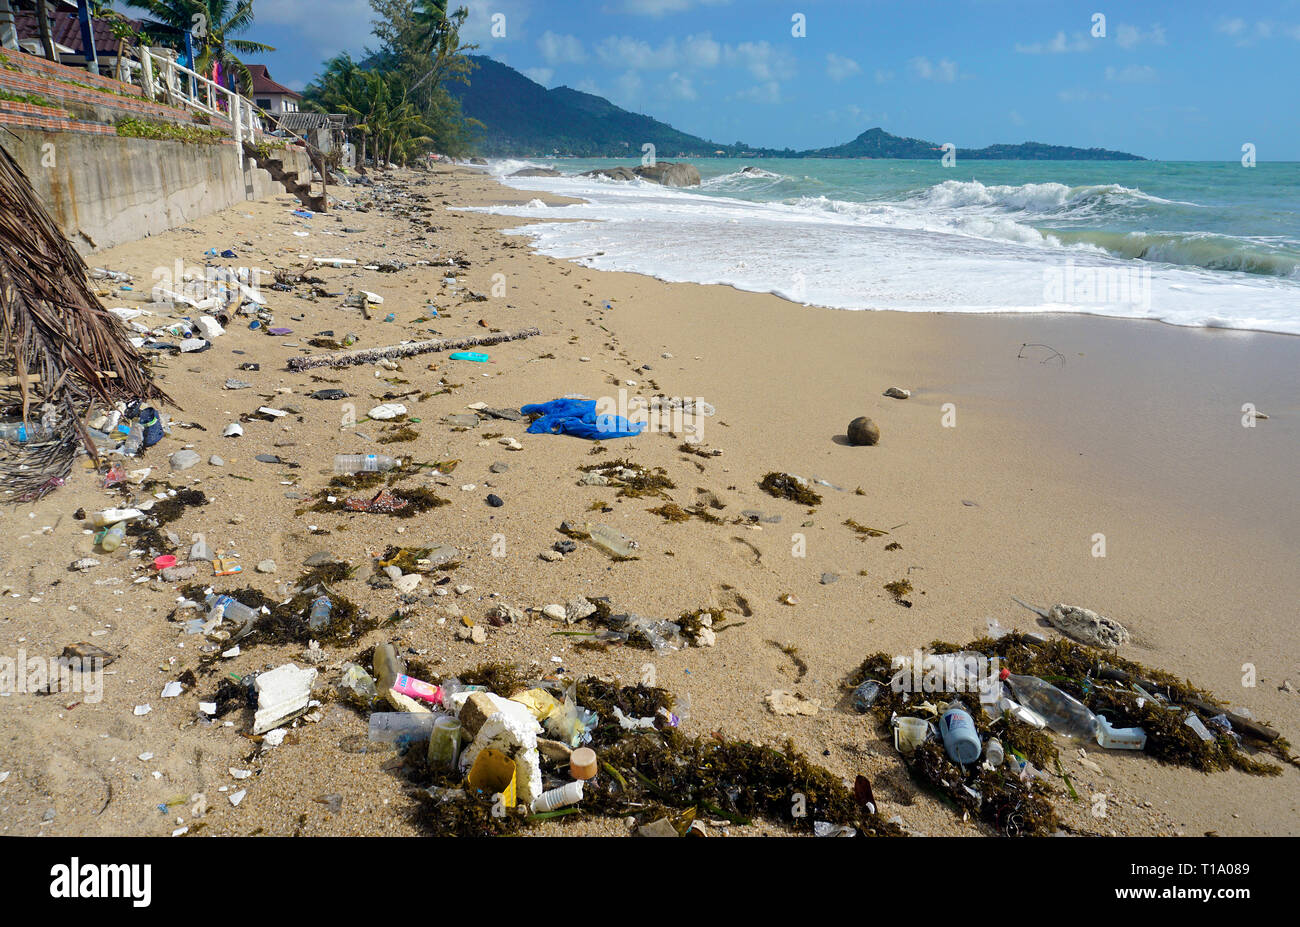 Spiaggia di inquinamento, lavato fino flotsam dopo la tempesta tropicale 'Pabuk', Lamai Beach, Koh Samui, Golfo di Thailandia, Tailandia Foto Stock